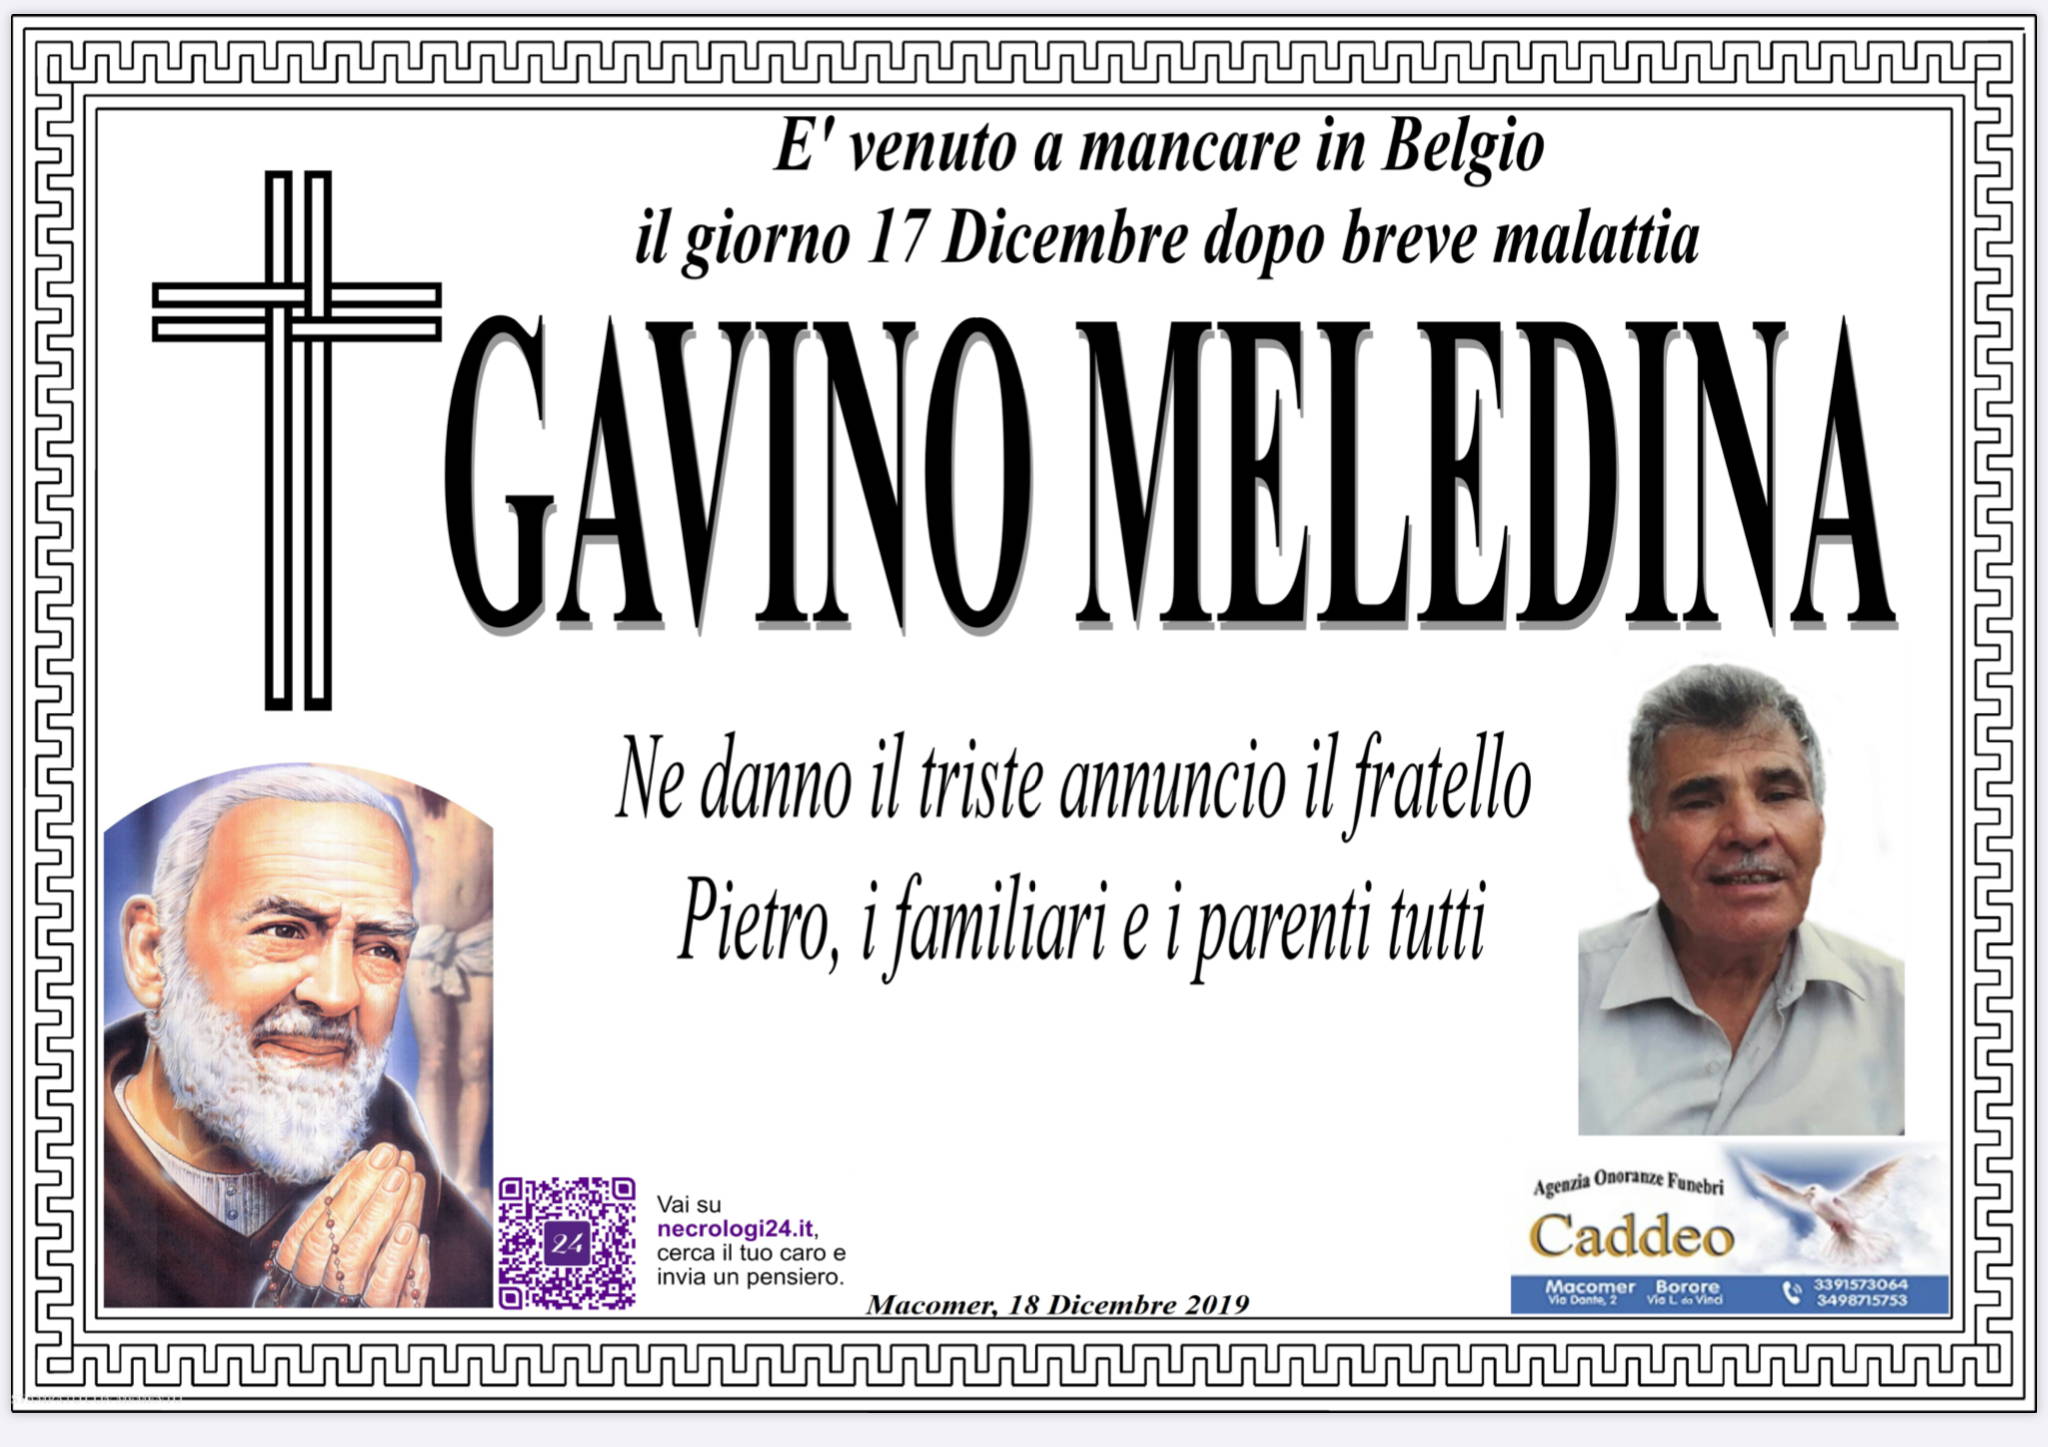 Gavino Meledina